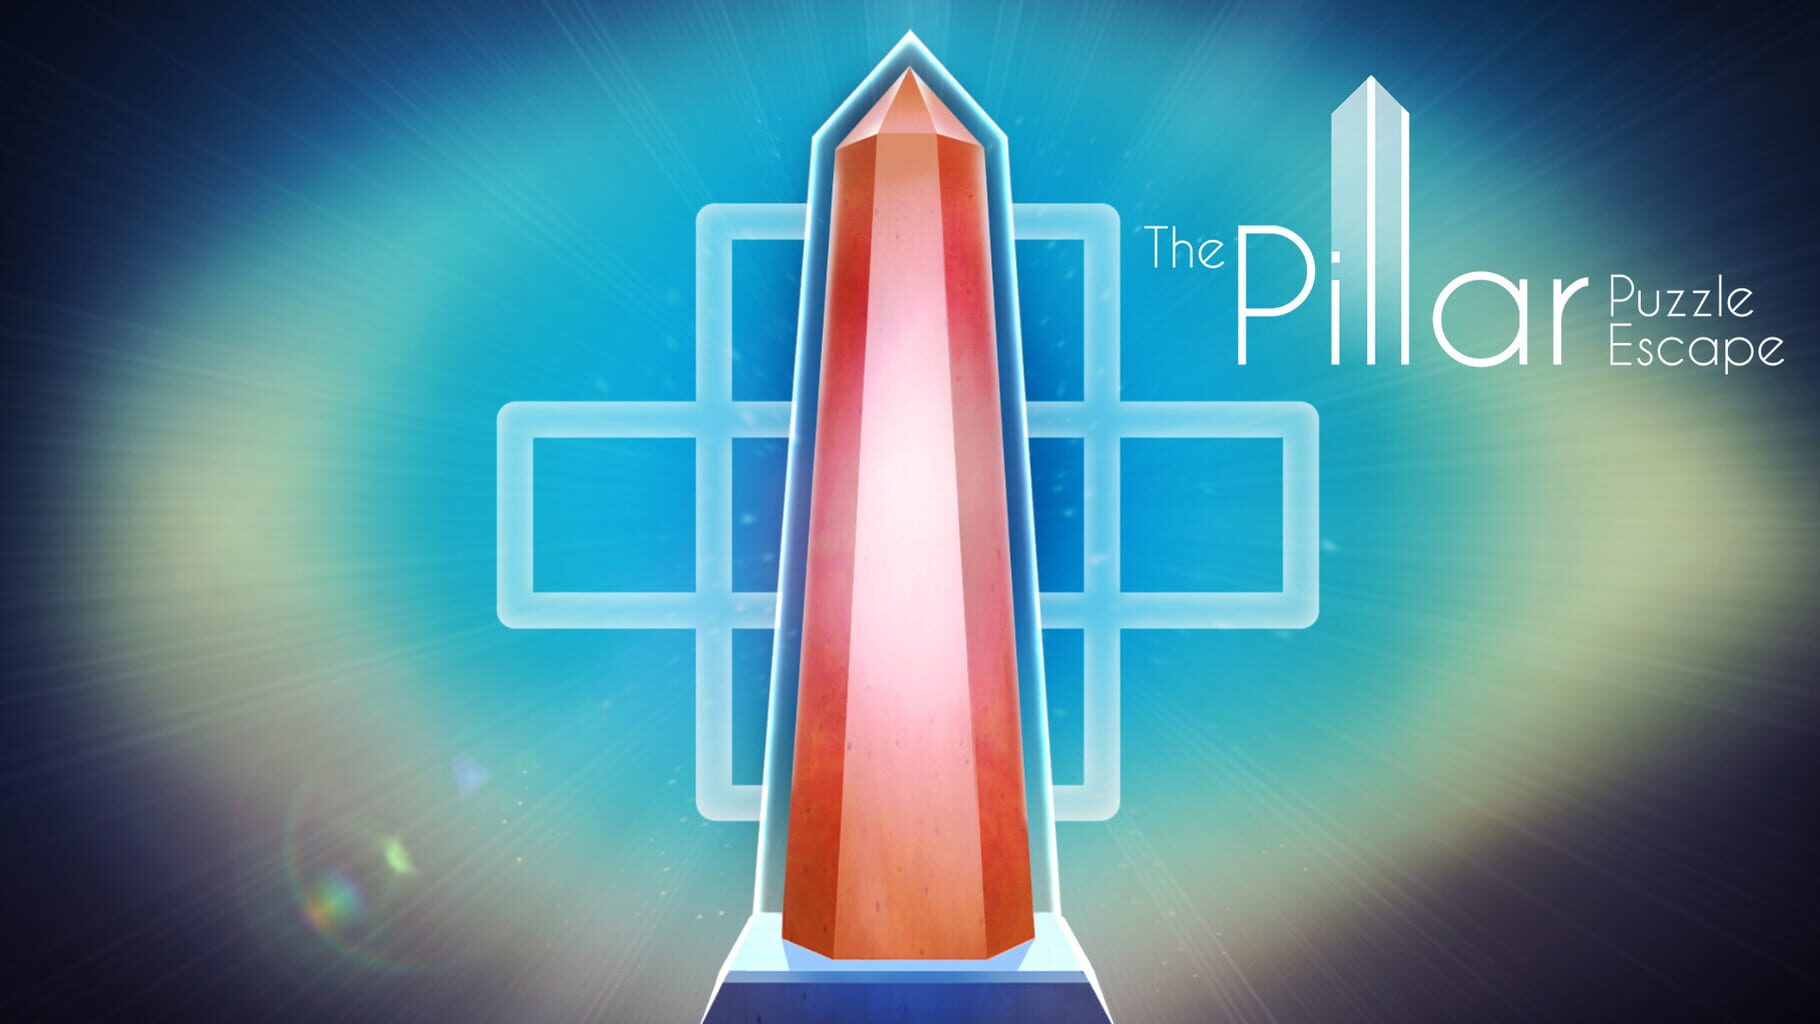 The Pillar: Puzzle Escape artwork